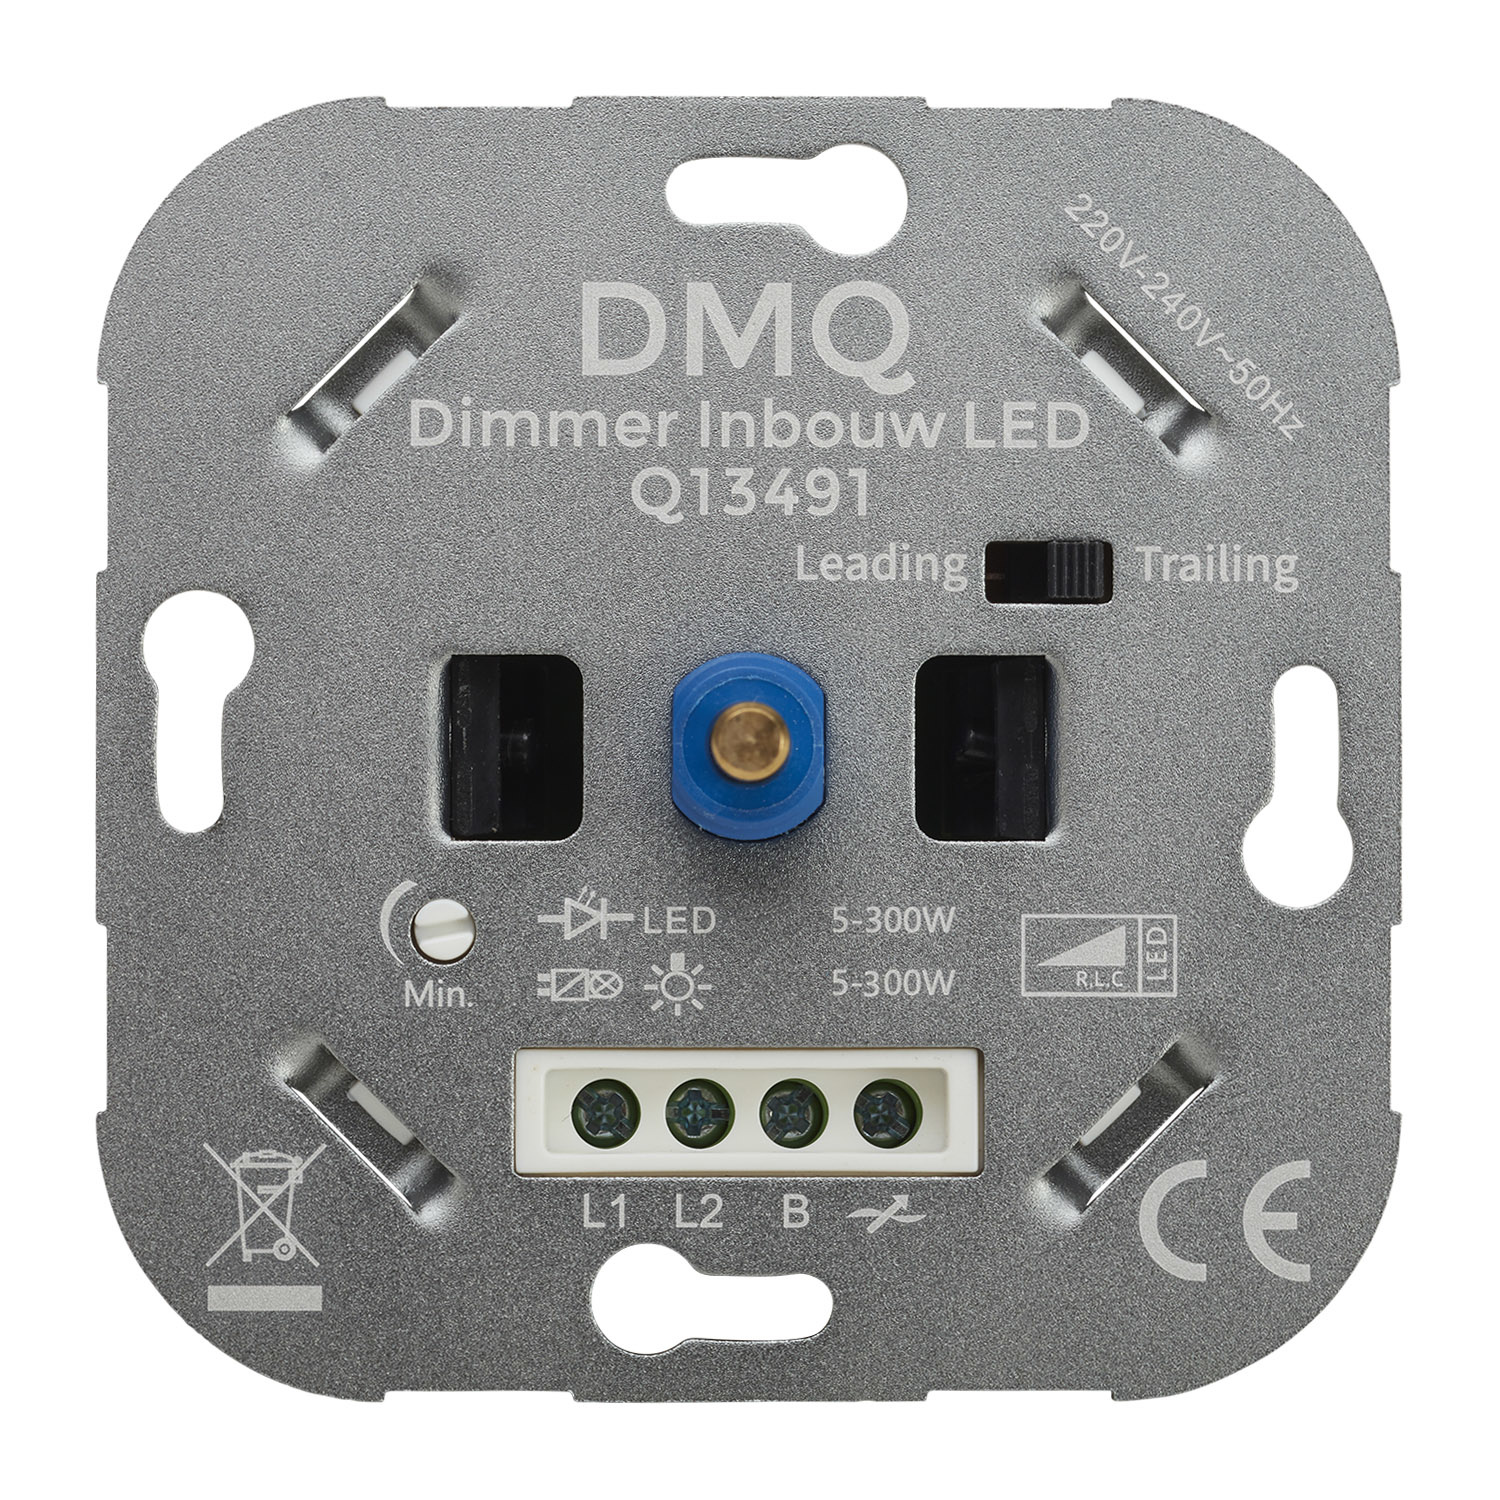 DMQ - LED Dimmer Inbouw Universeel - Werkt op 99% van alle LED - DMQ